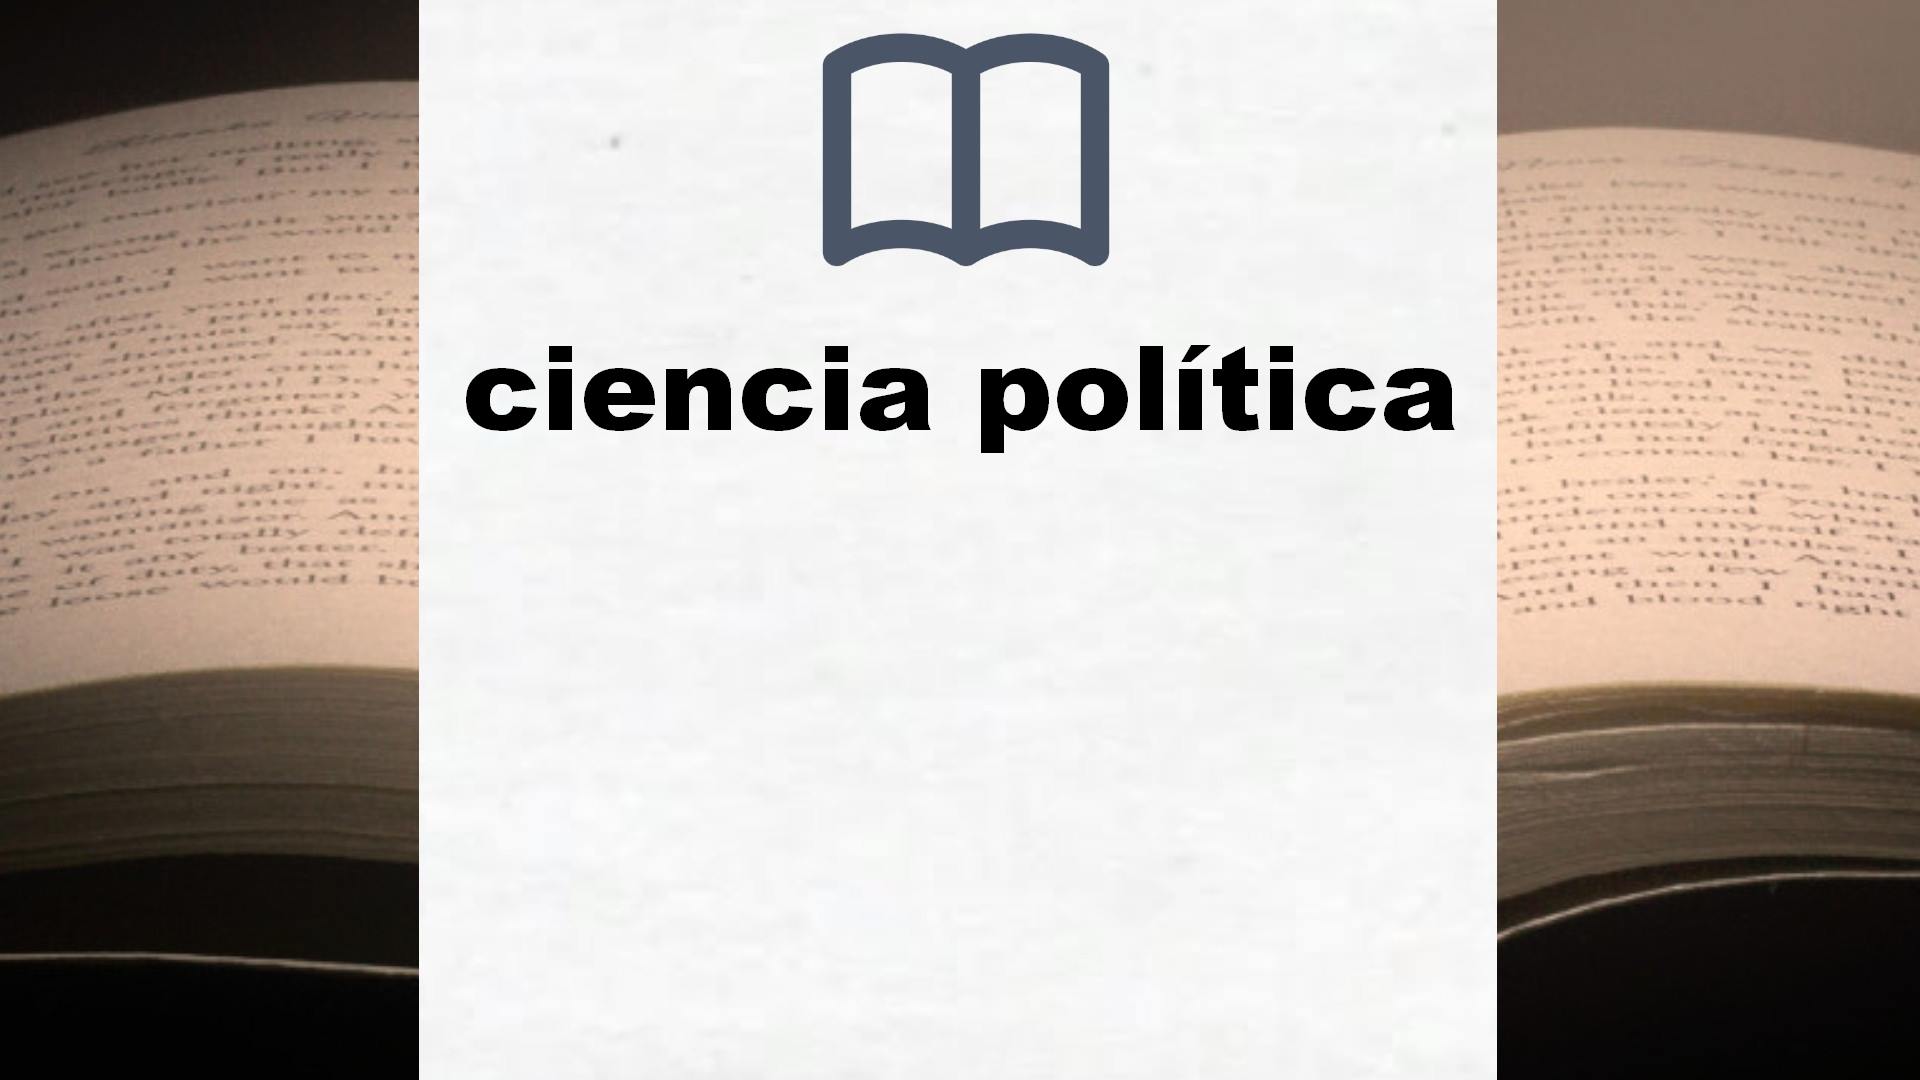 Libros sobre ciencia política